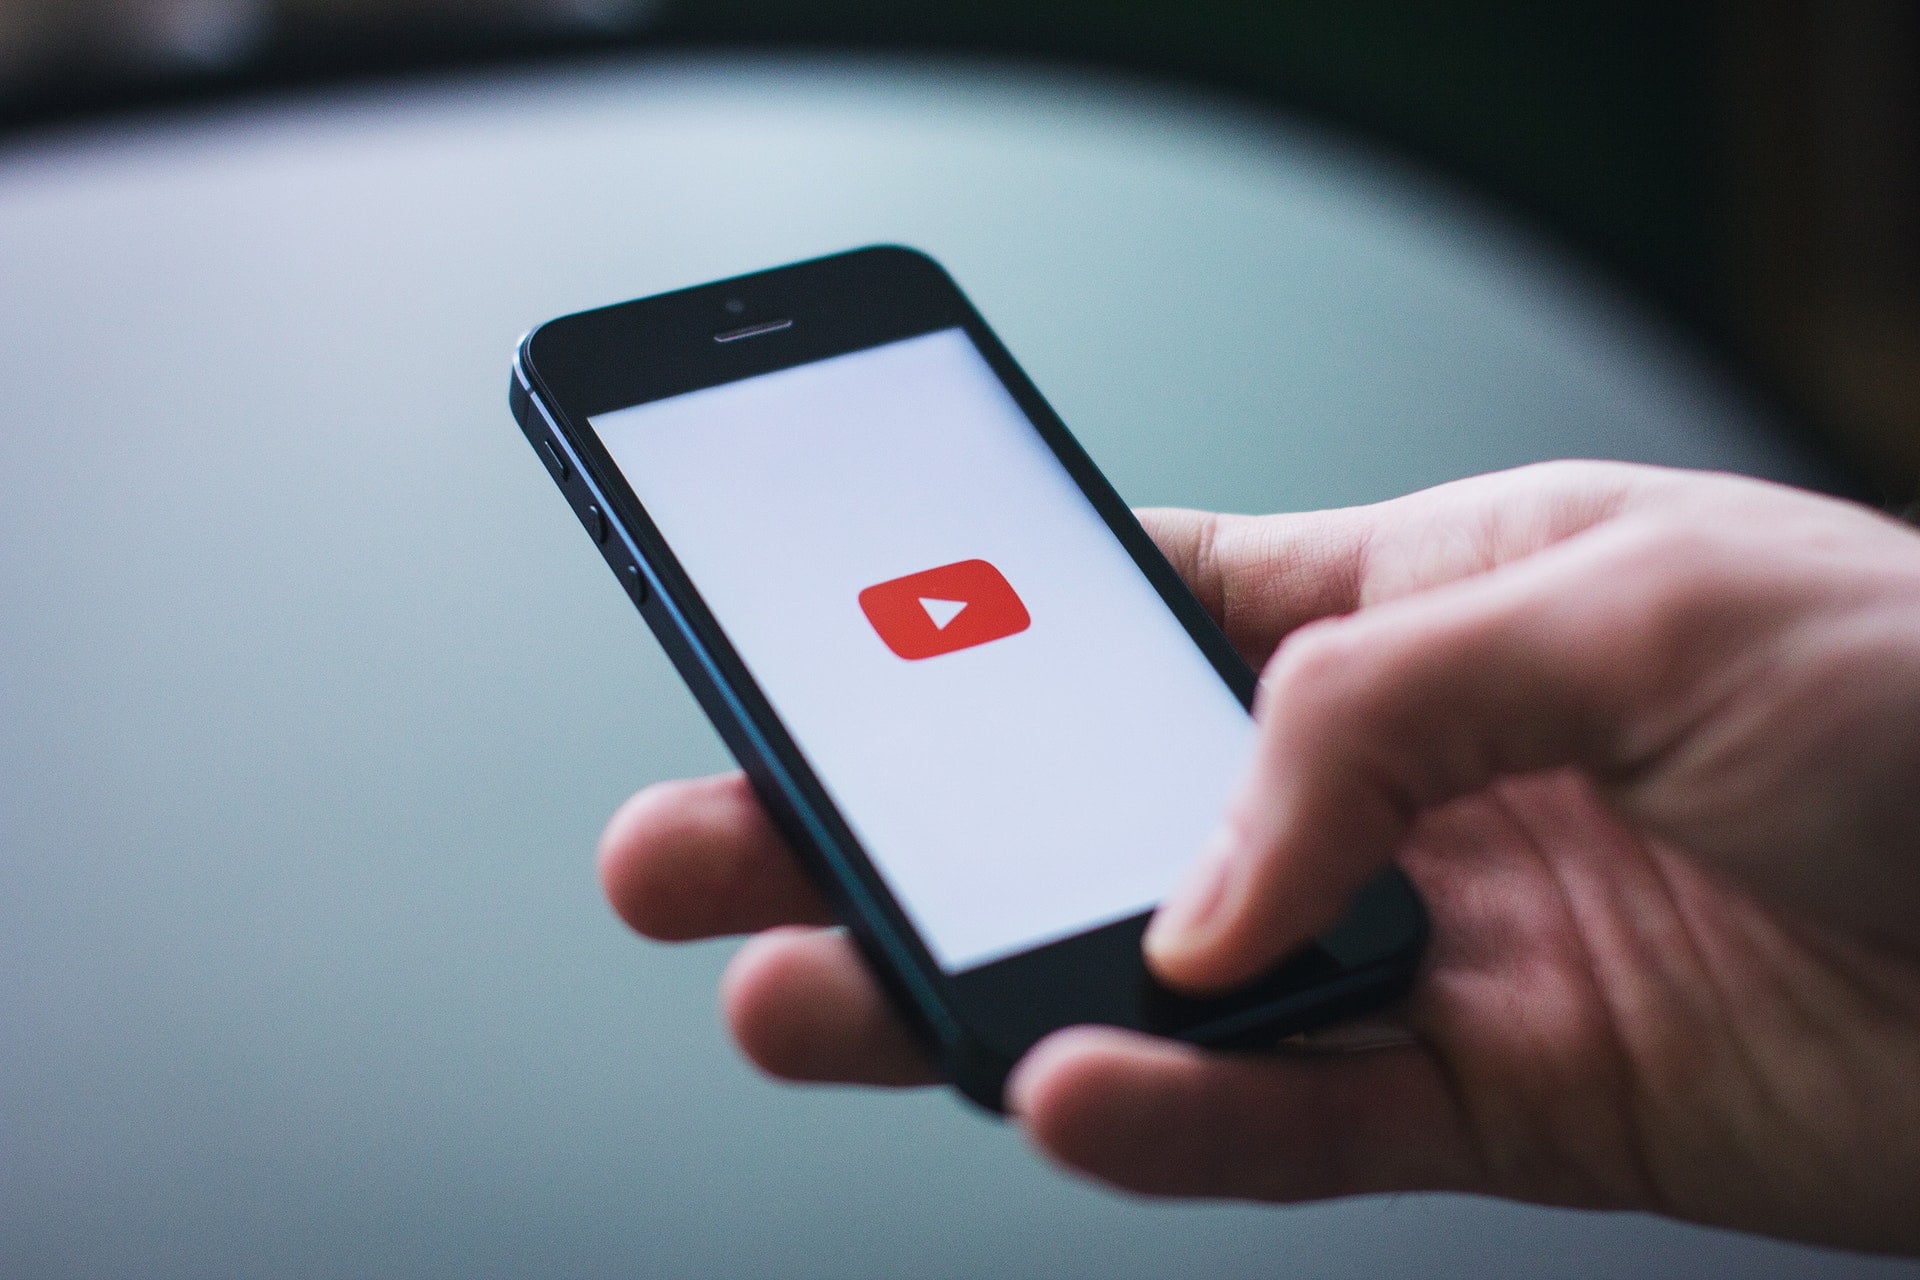 YouTube möchte lehren, wie man Informationen aus dem Internet verifiziert. Er wird dafür ... "Werbung" verwenden 124